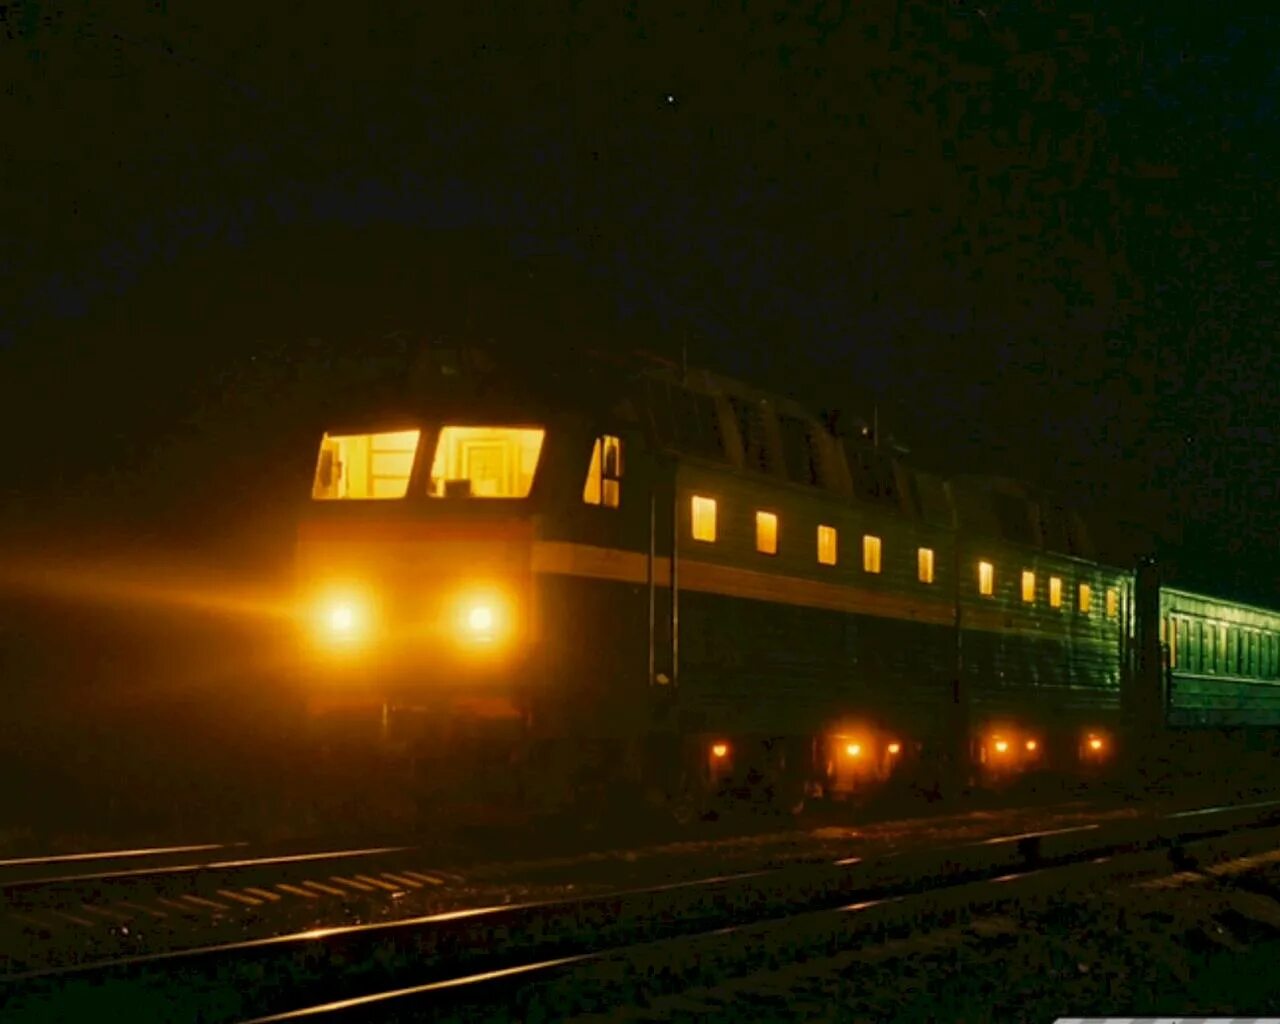 Ночной поезд. Поезд ночью. Пассажирский поезд ночью. Ночная электричка. Поезд едет вечером